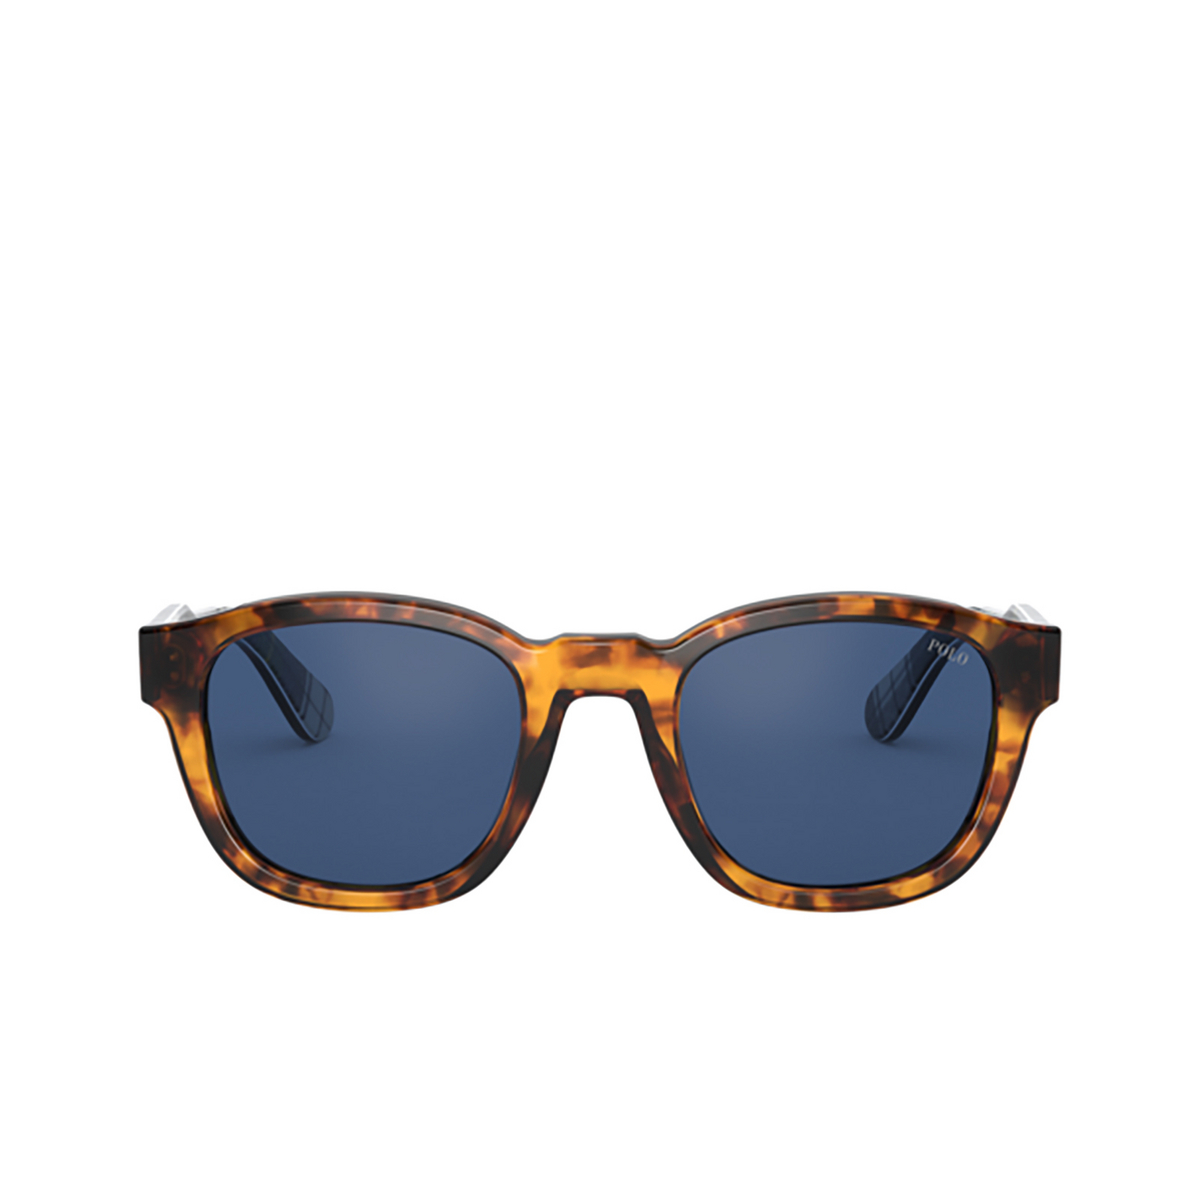 Polo Ralph Lauren PH4159 Sunglasses 513480 SHINY ANTIQUE TORTOISE - front view